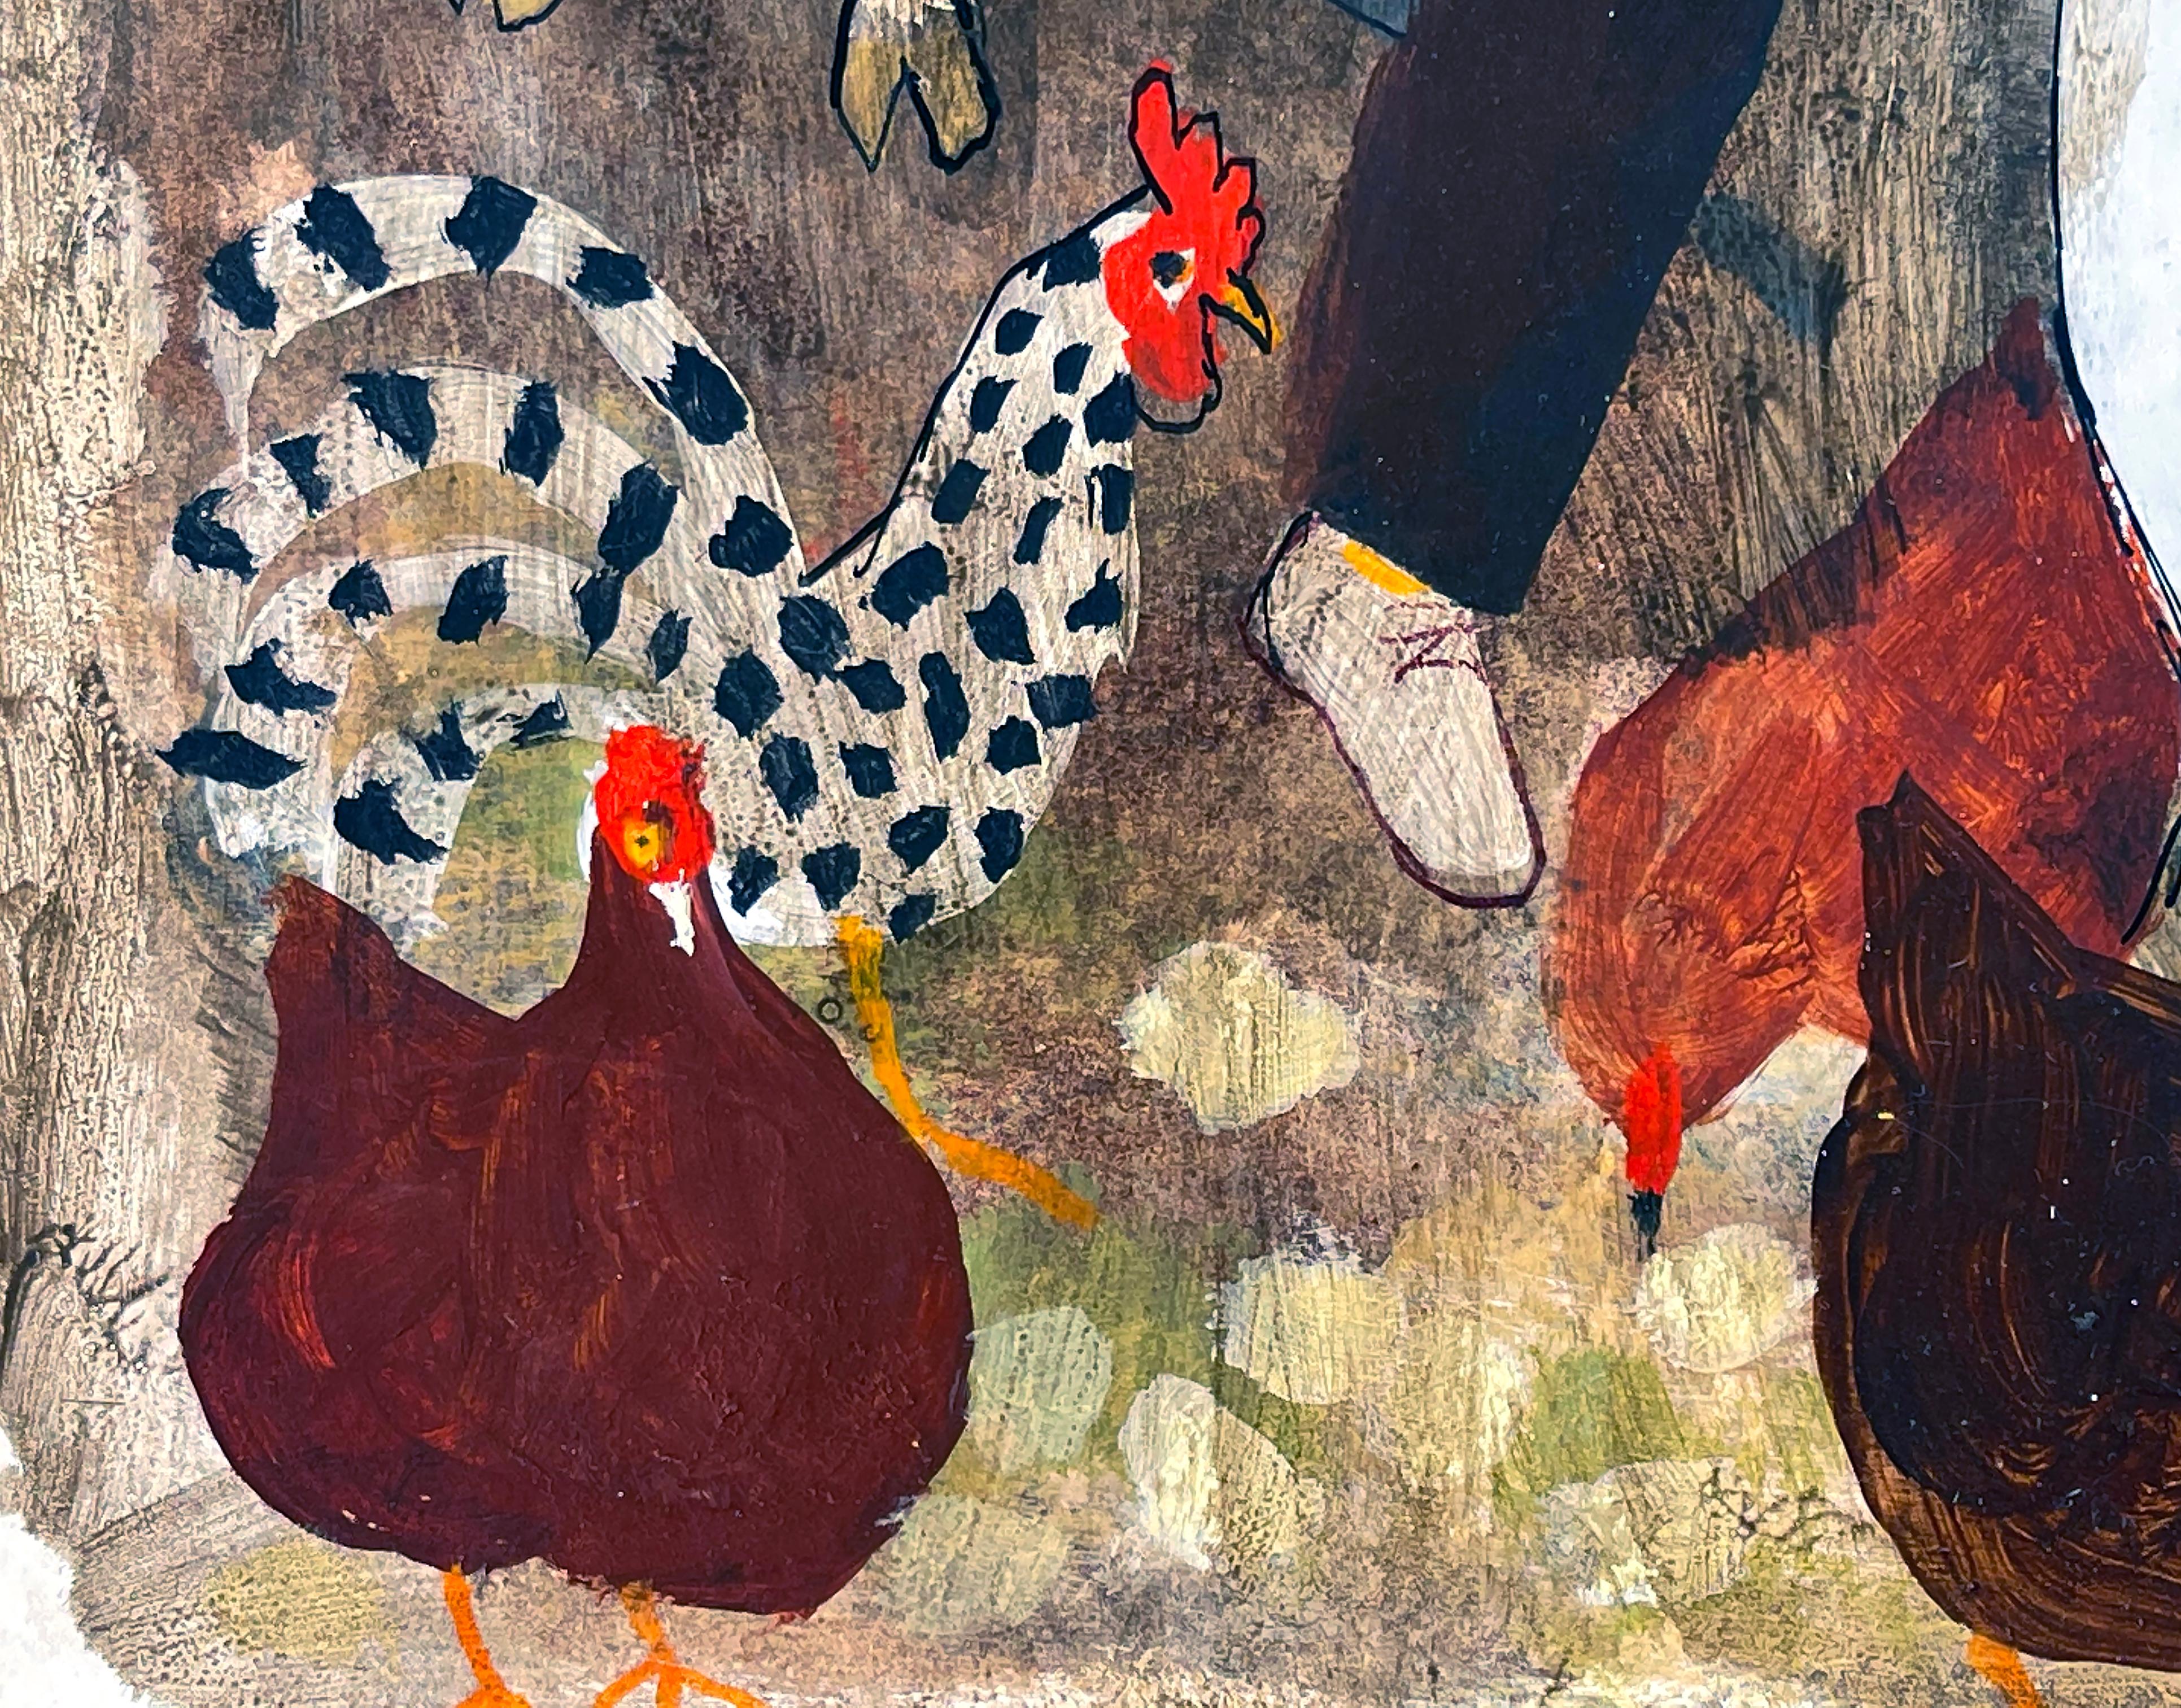 Duck in Farm mit Pferd, Ziege und Hühnern.  Illustration von Kinderbüchern – Painting von ALICE and  MARTIN PROVENSEN